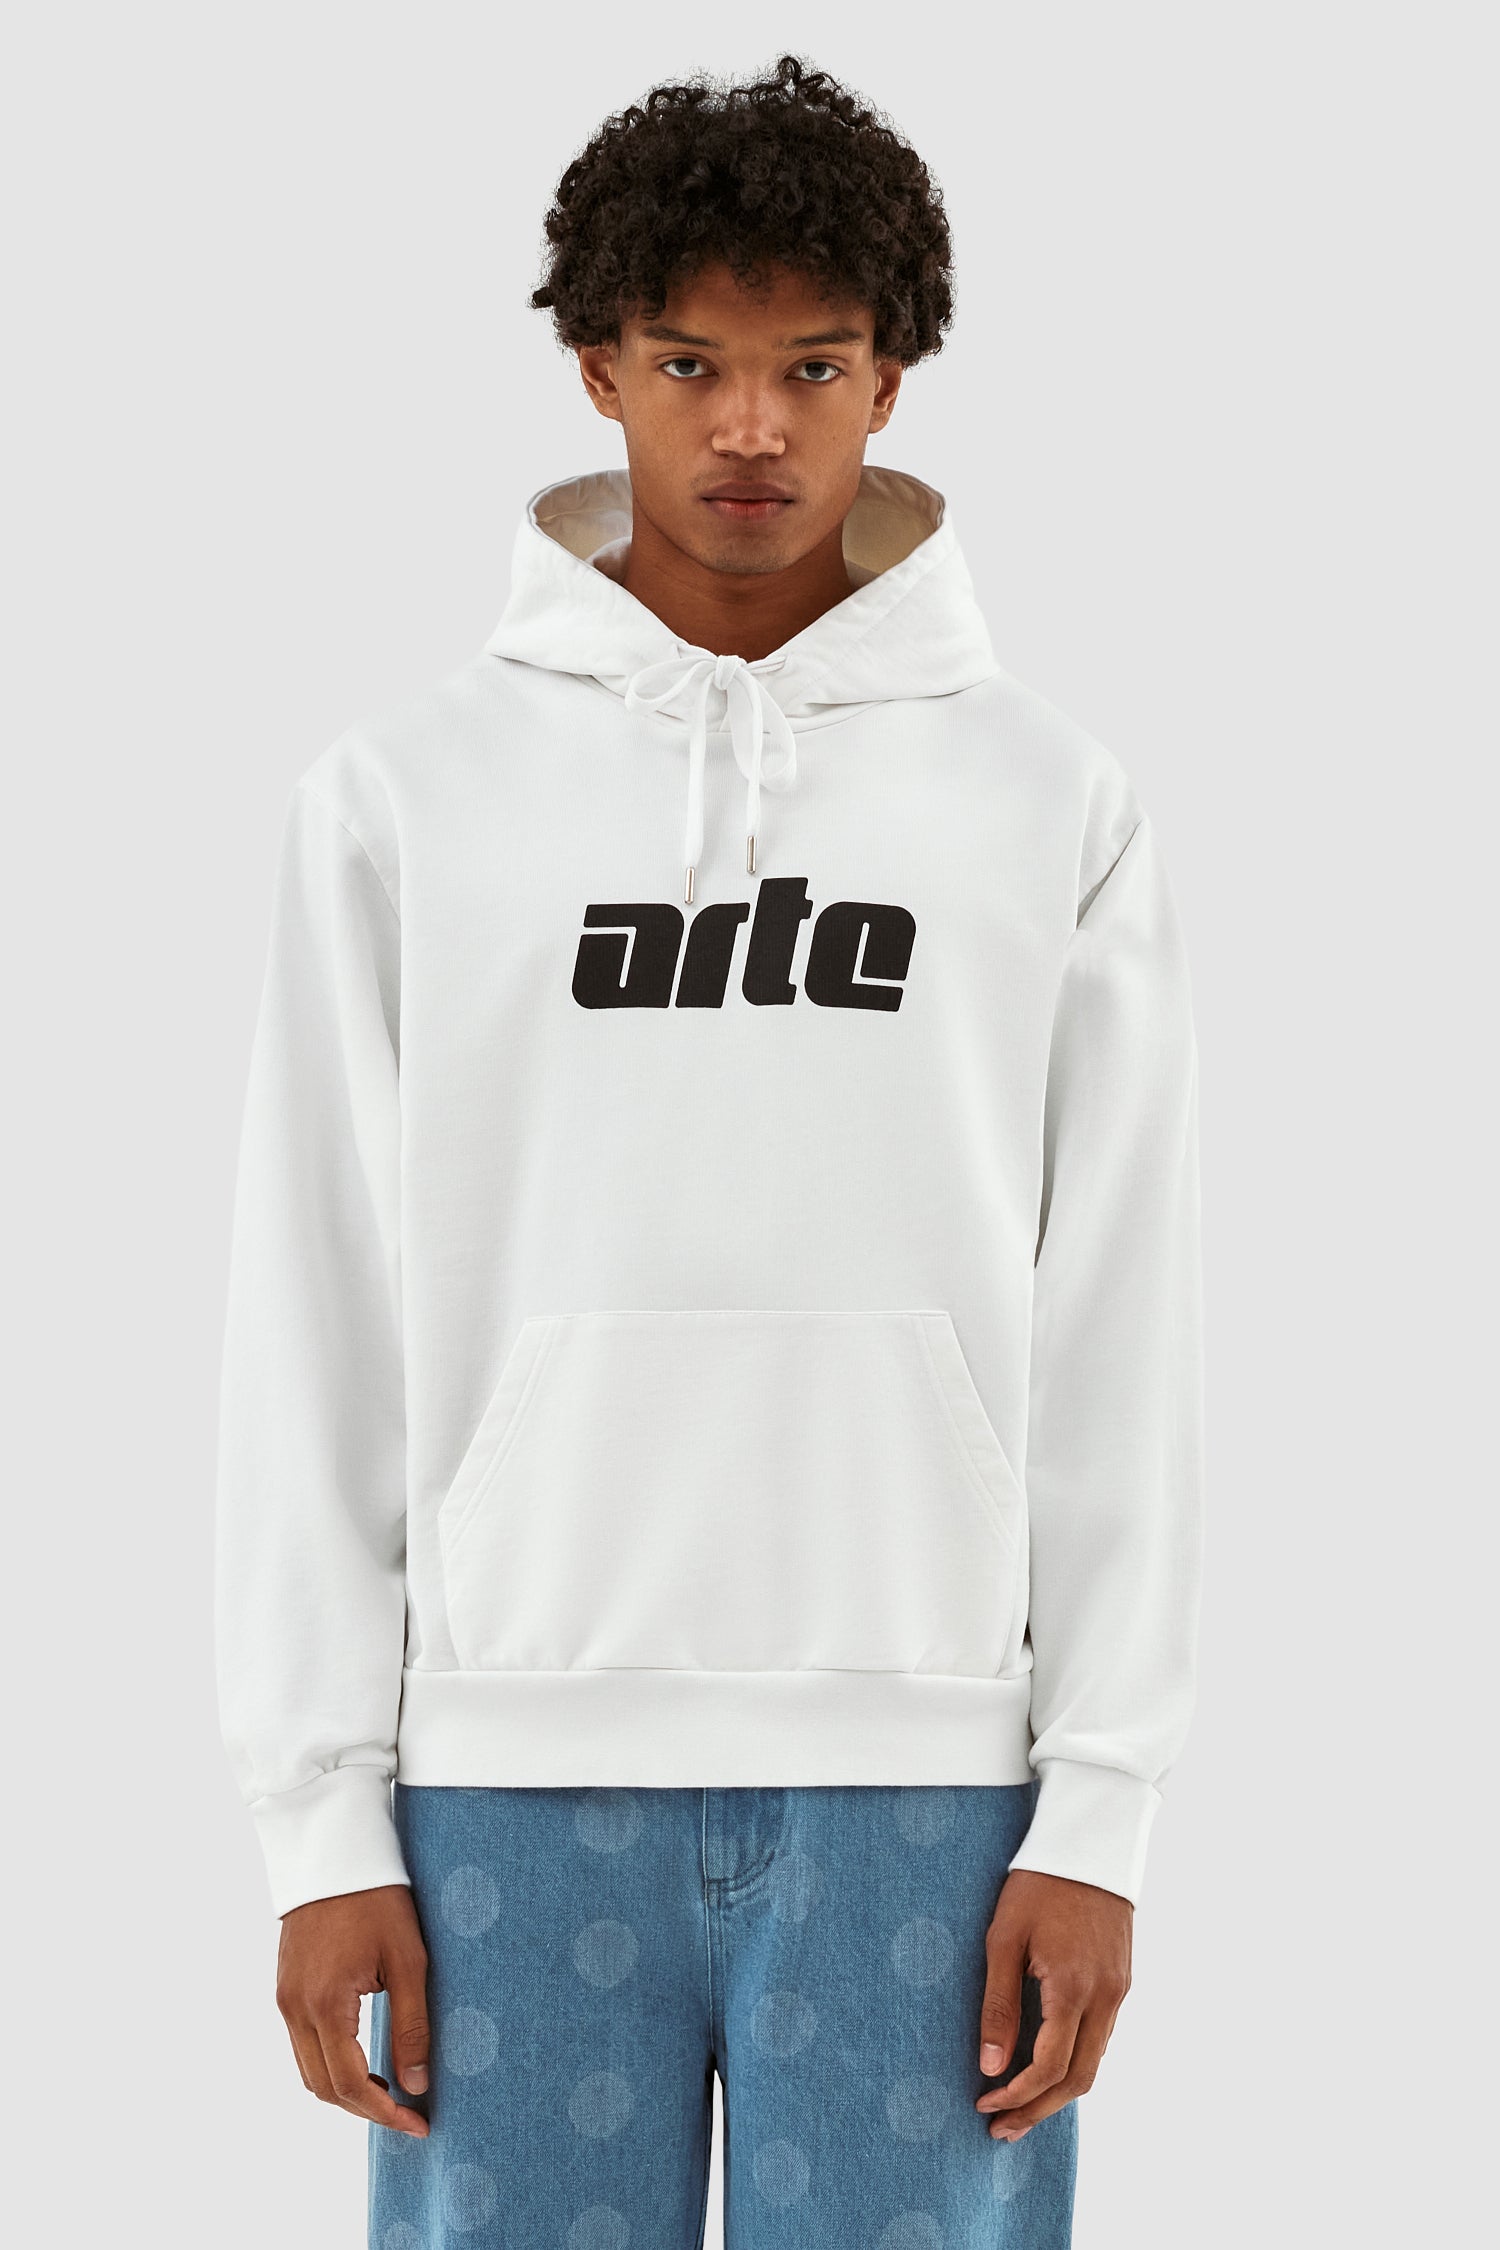 arte hoodies